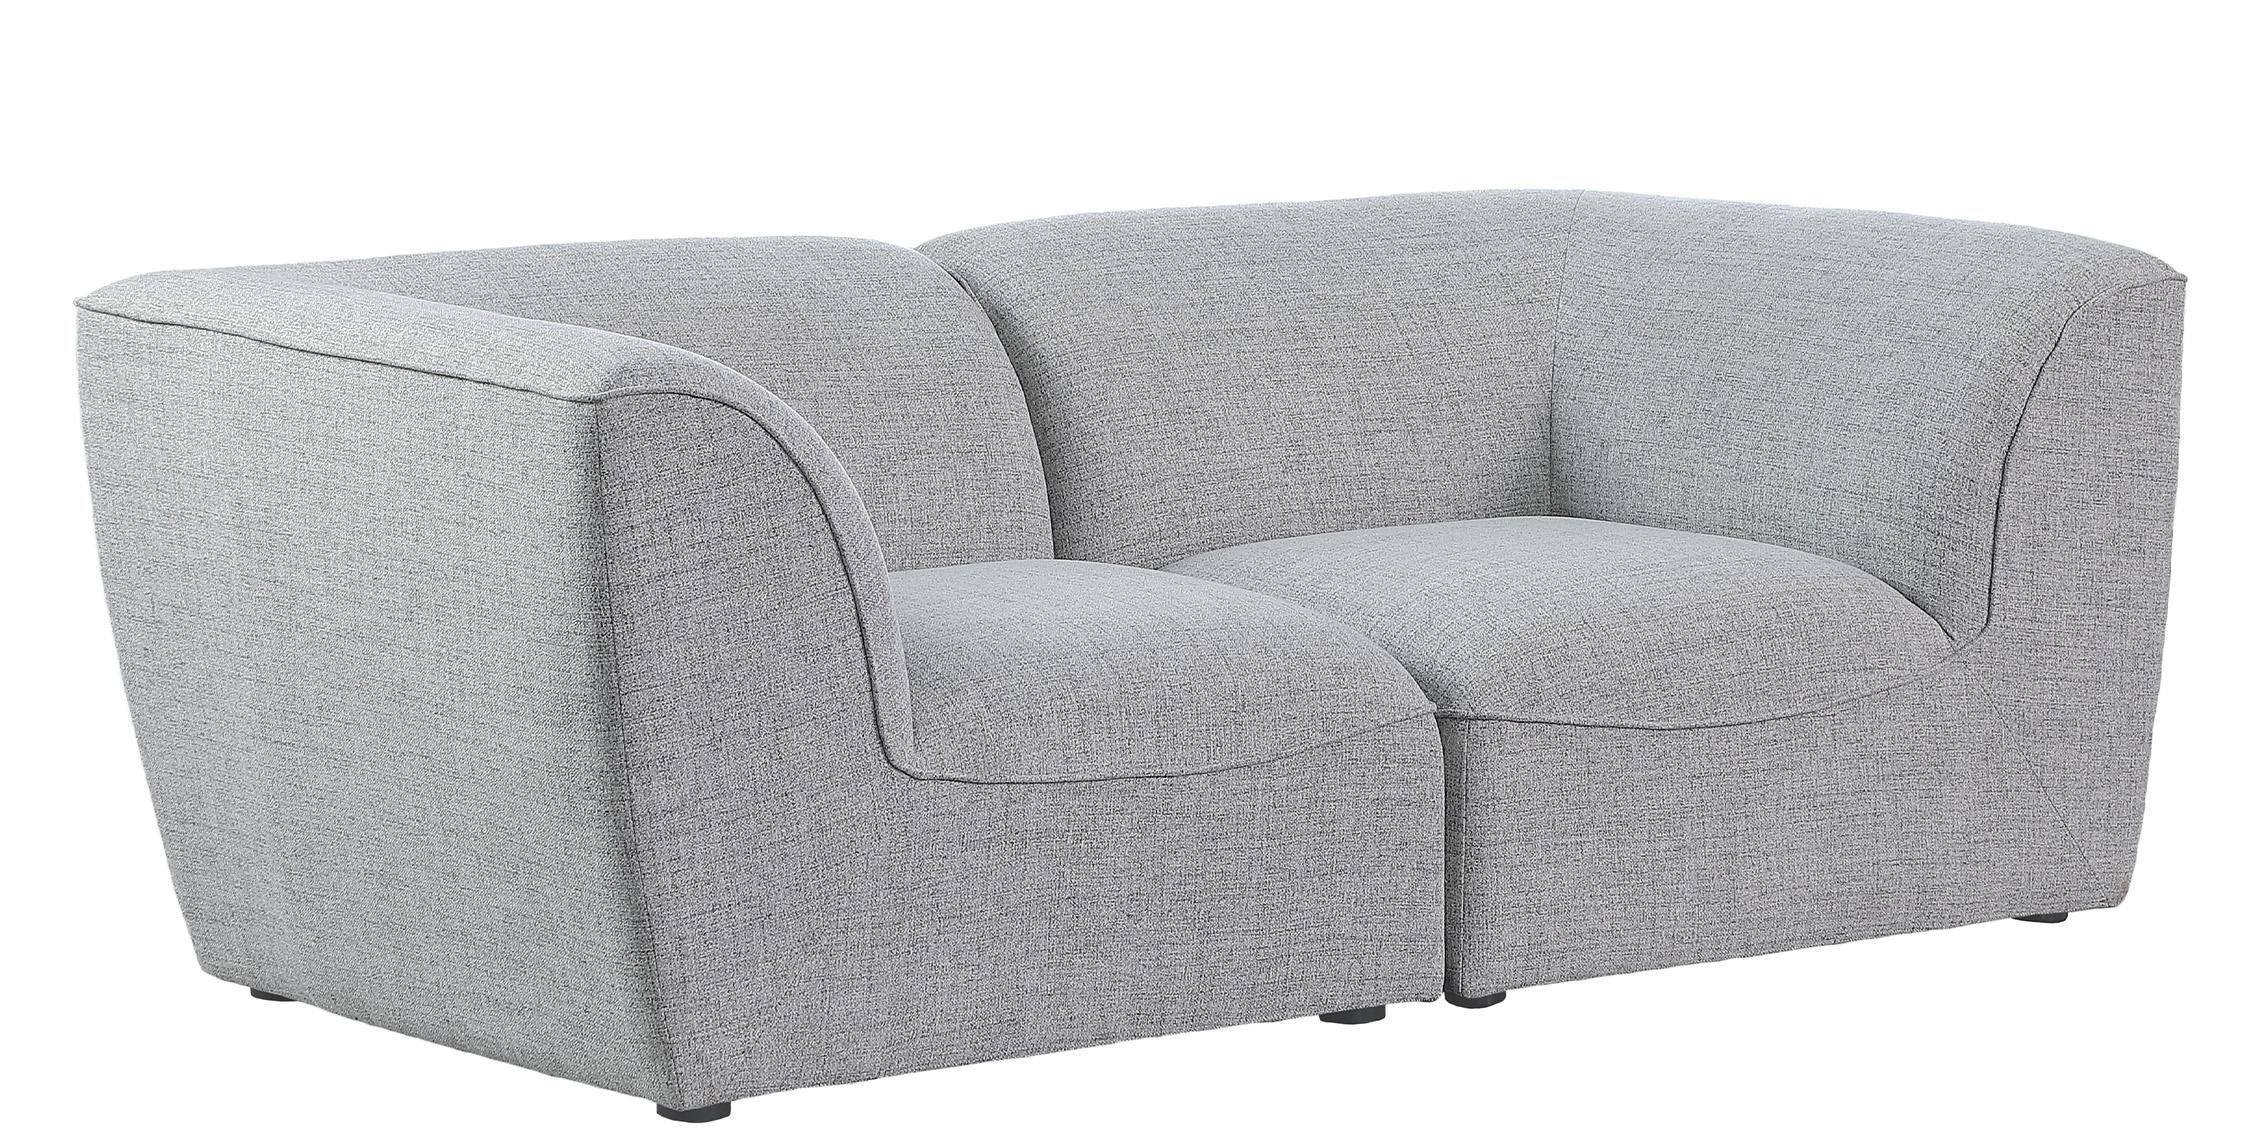 Contemporary, Modern Modular Sofa MIRAMAR 683Grey-S76 683Grey-S76 in Gray Linen